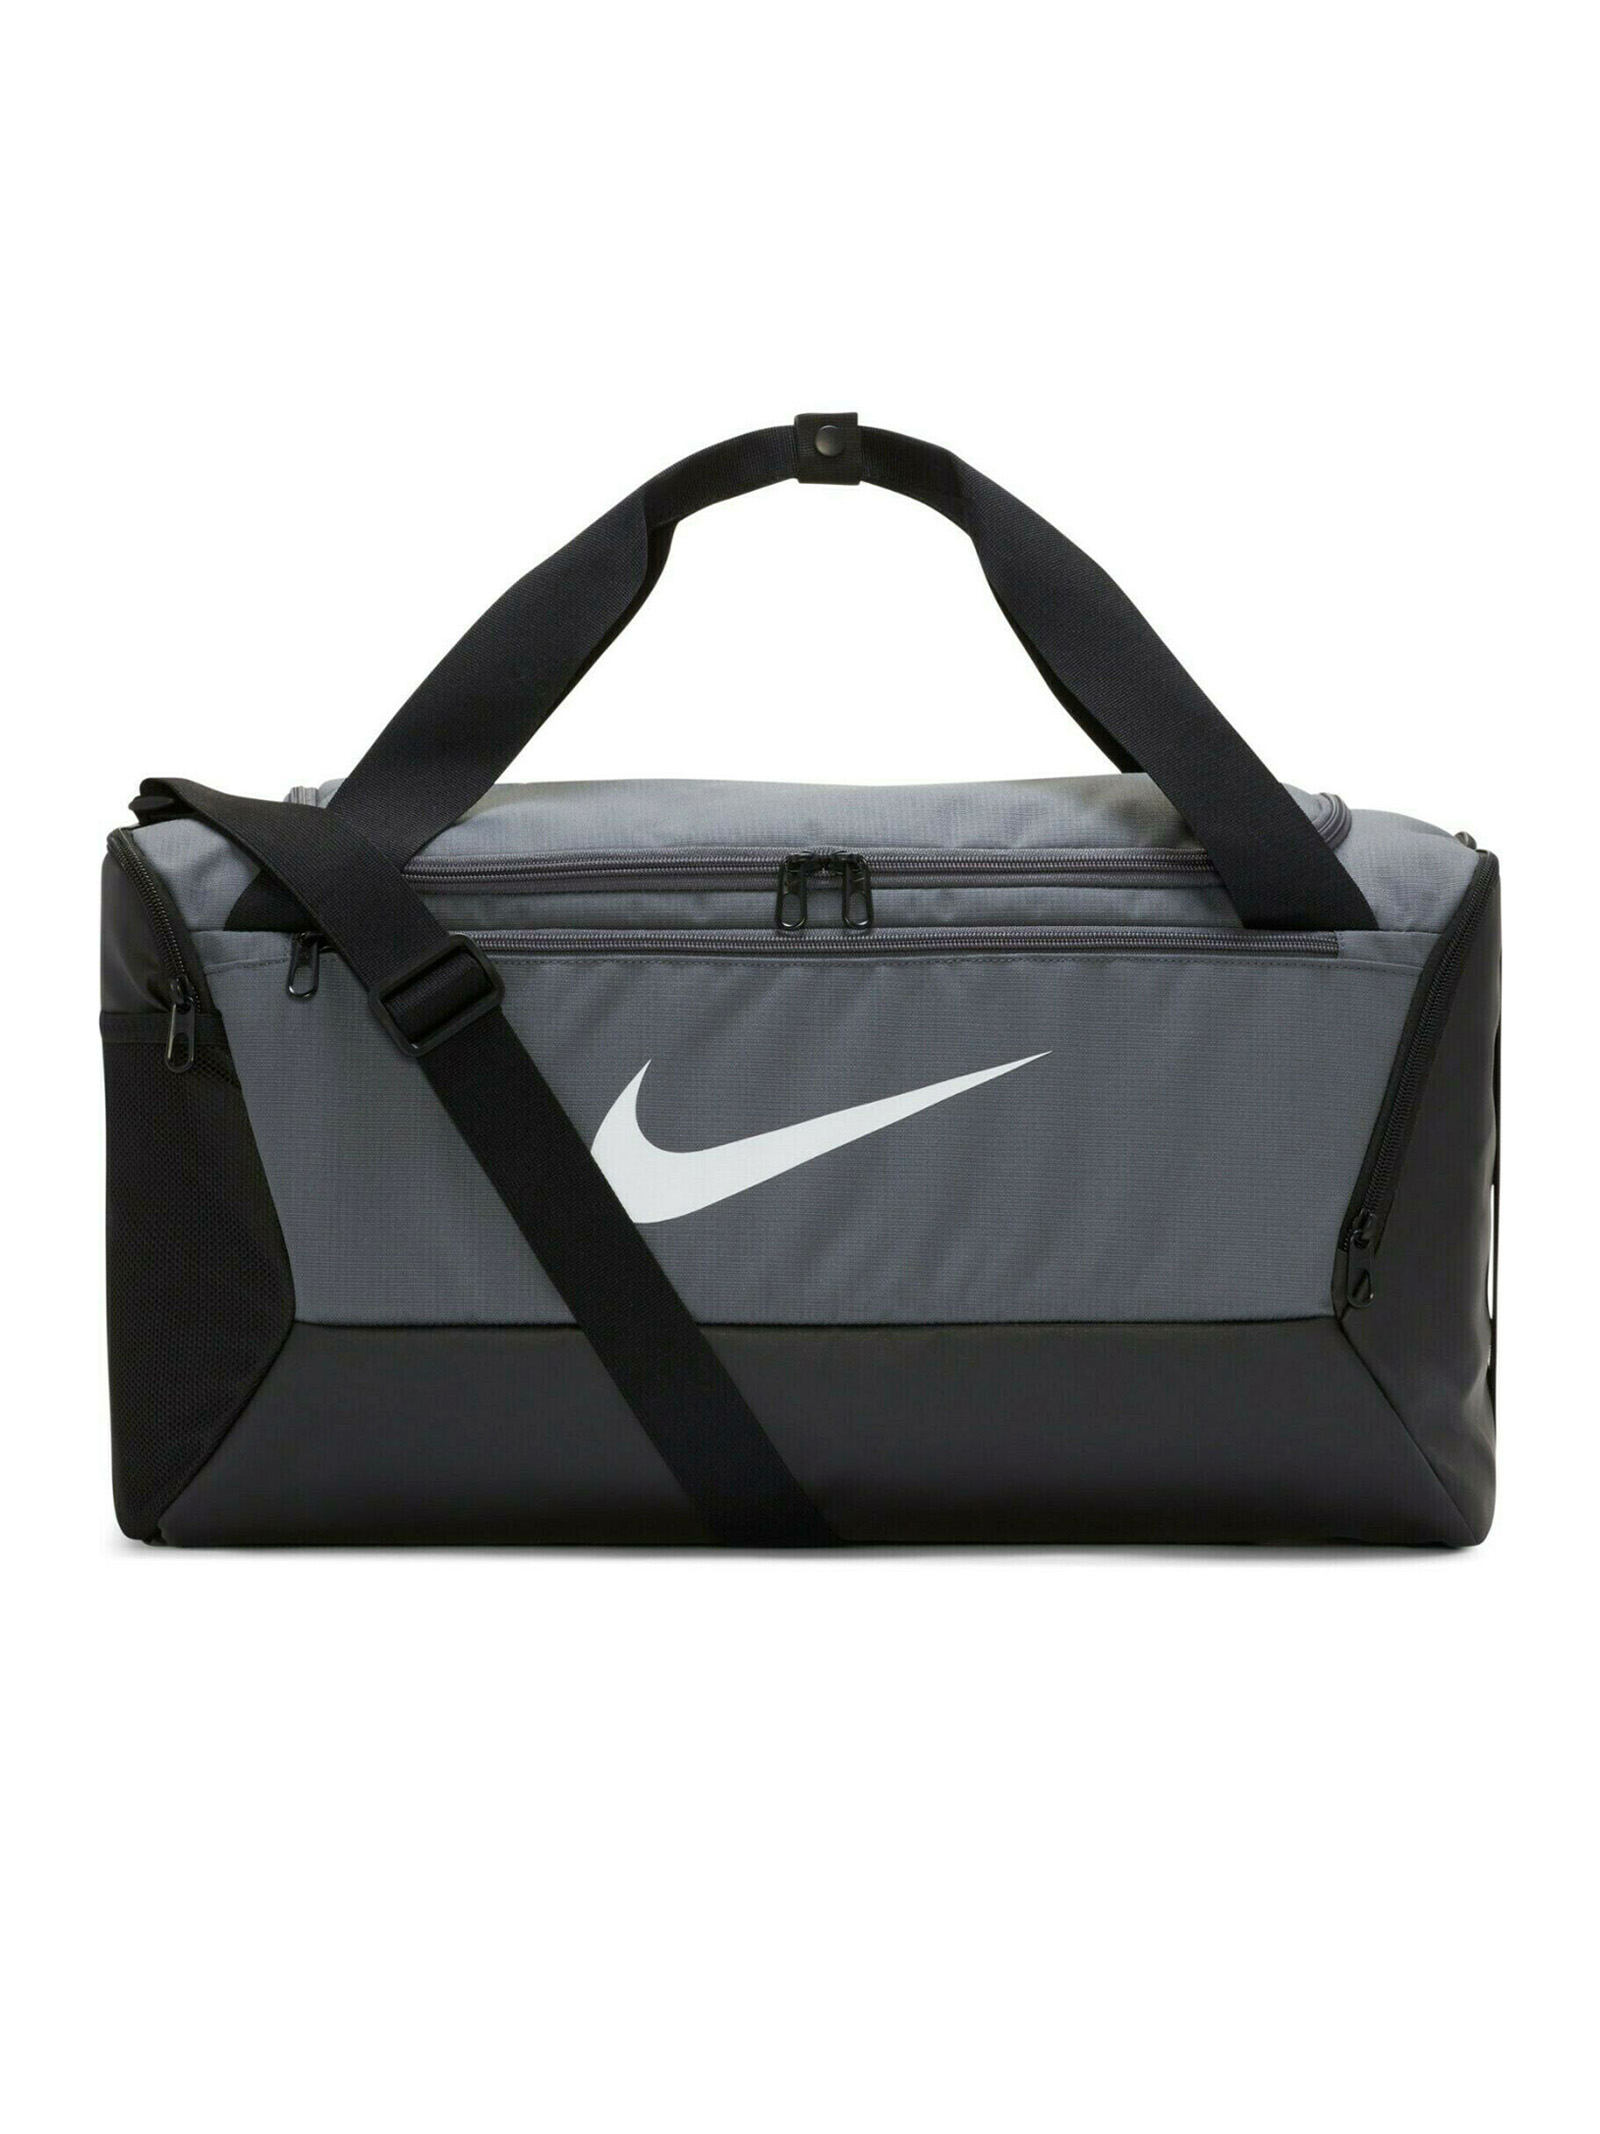 Спортивная сумка унисекс Nike Brasilia, серый/черный